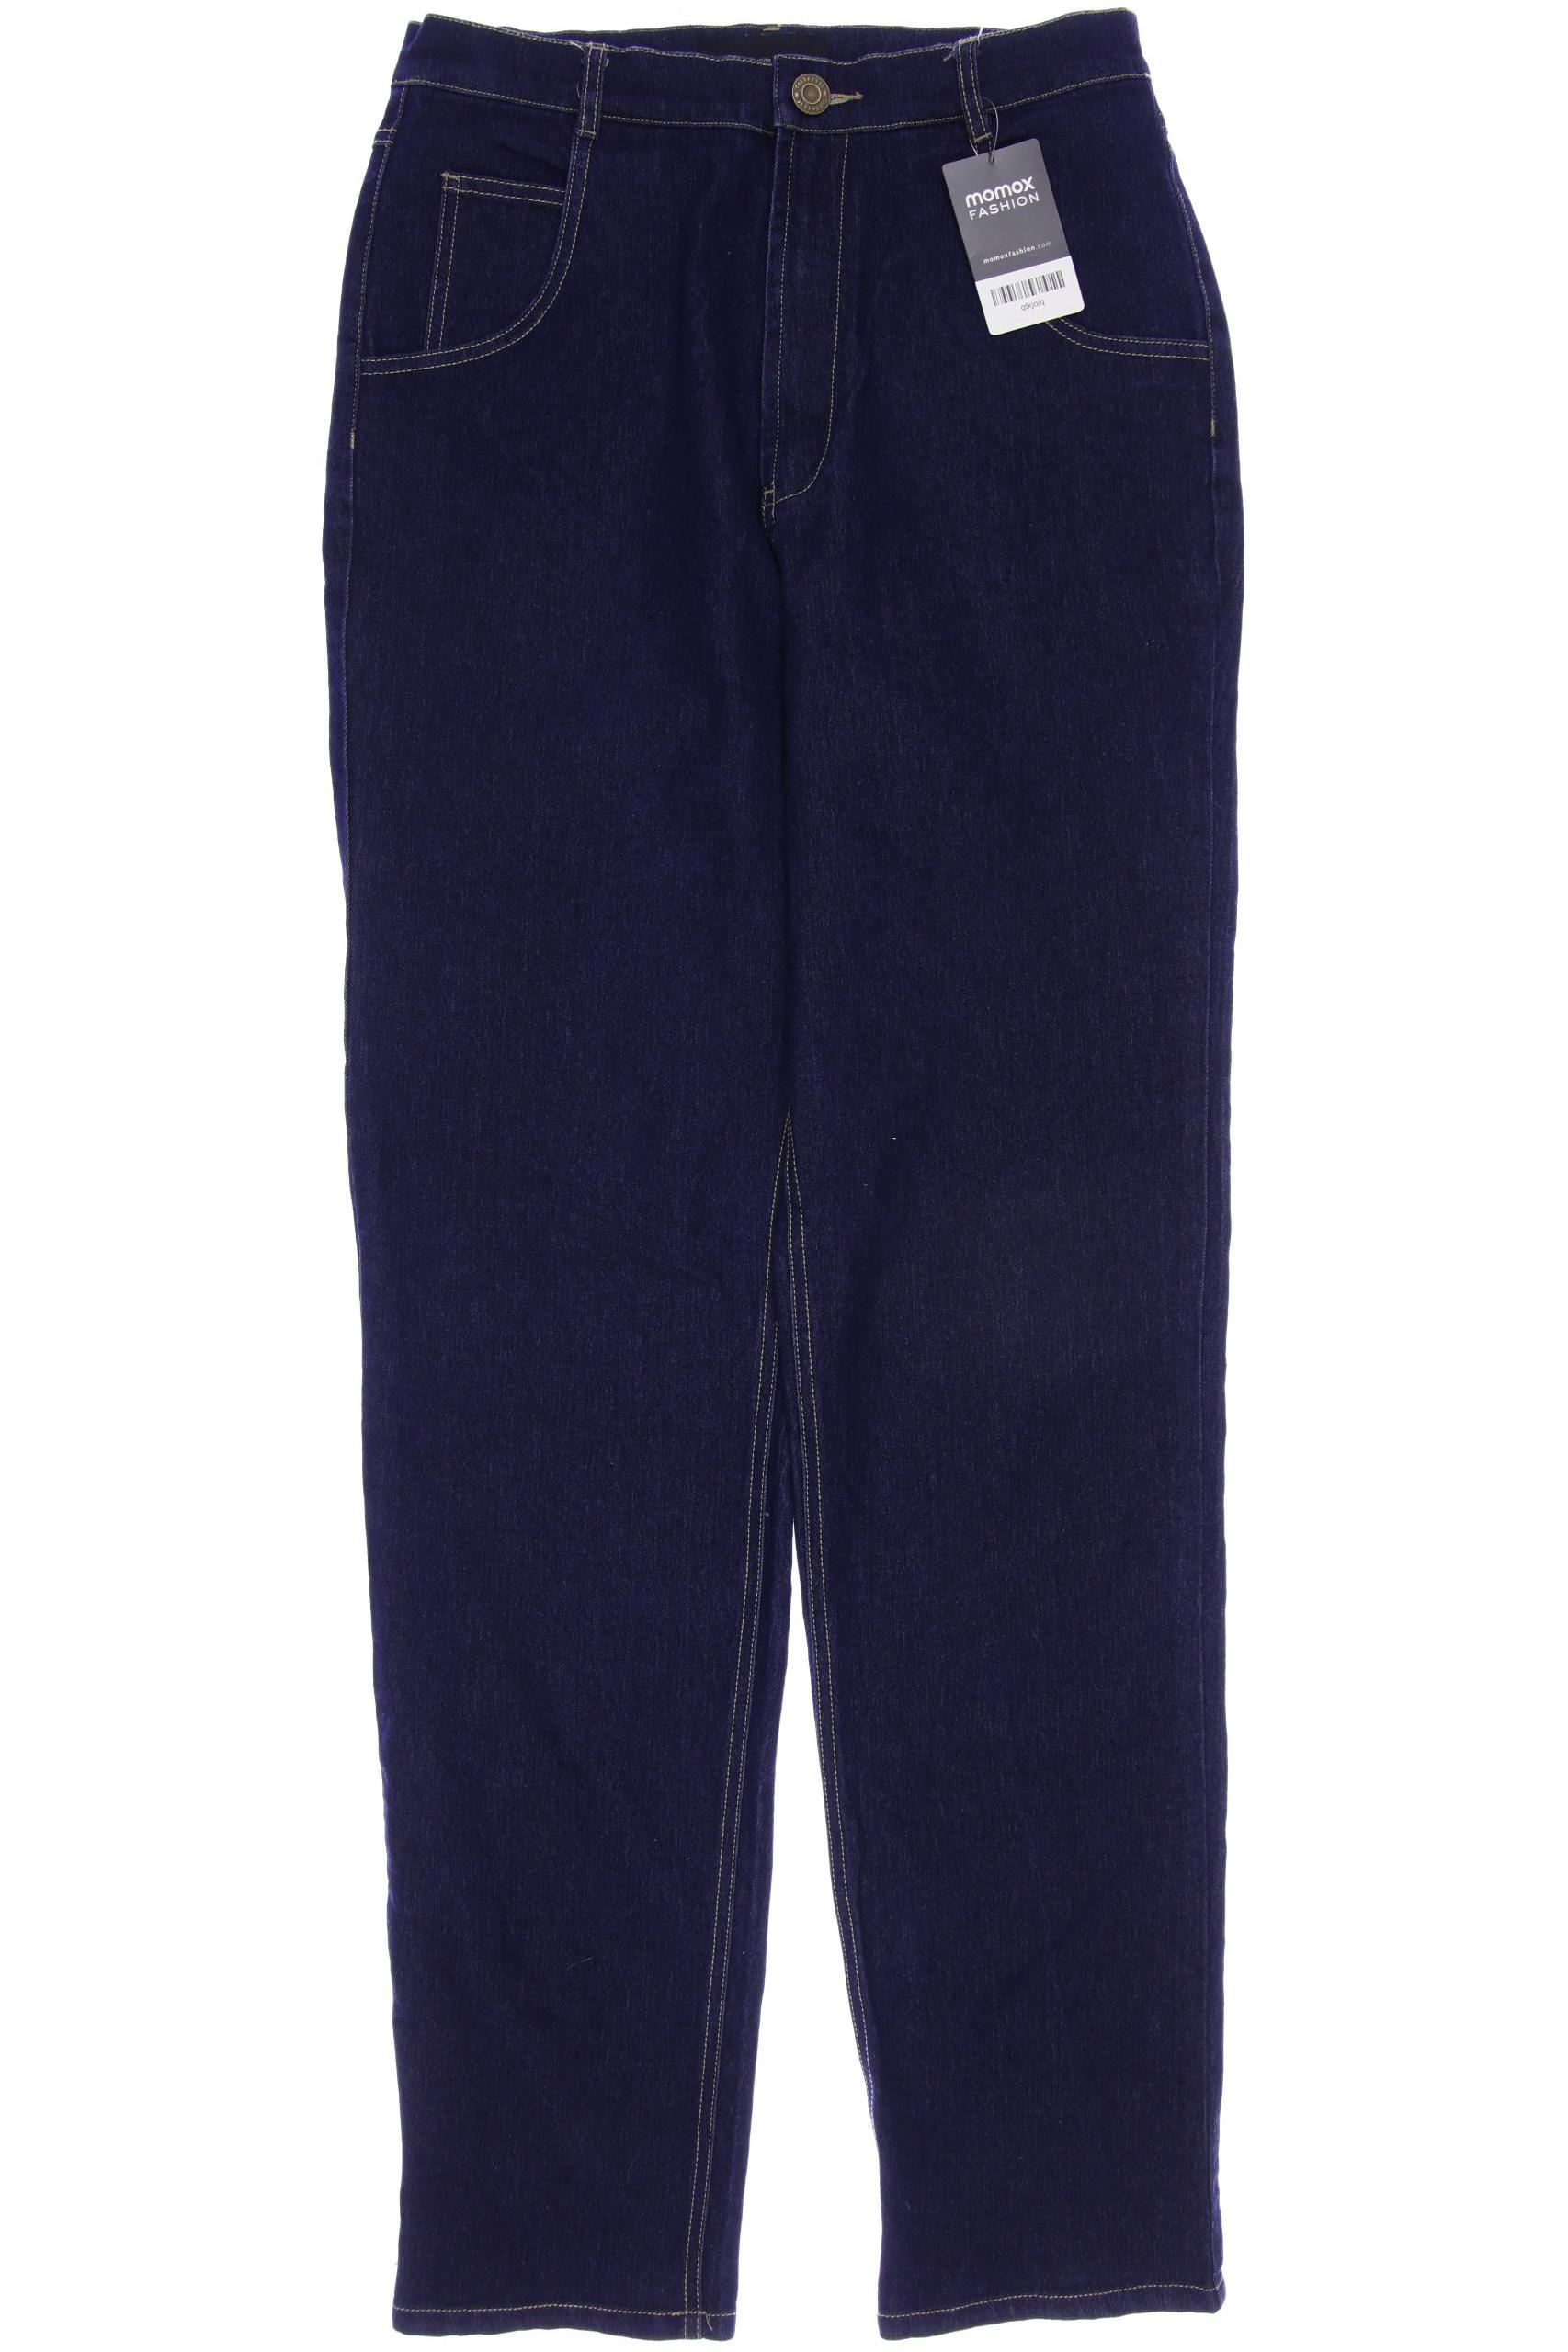 Collectif Damen Jeans, marineblau, Gr. 38 von Collectif